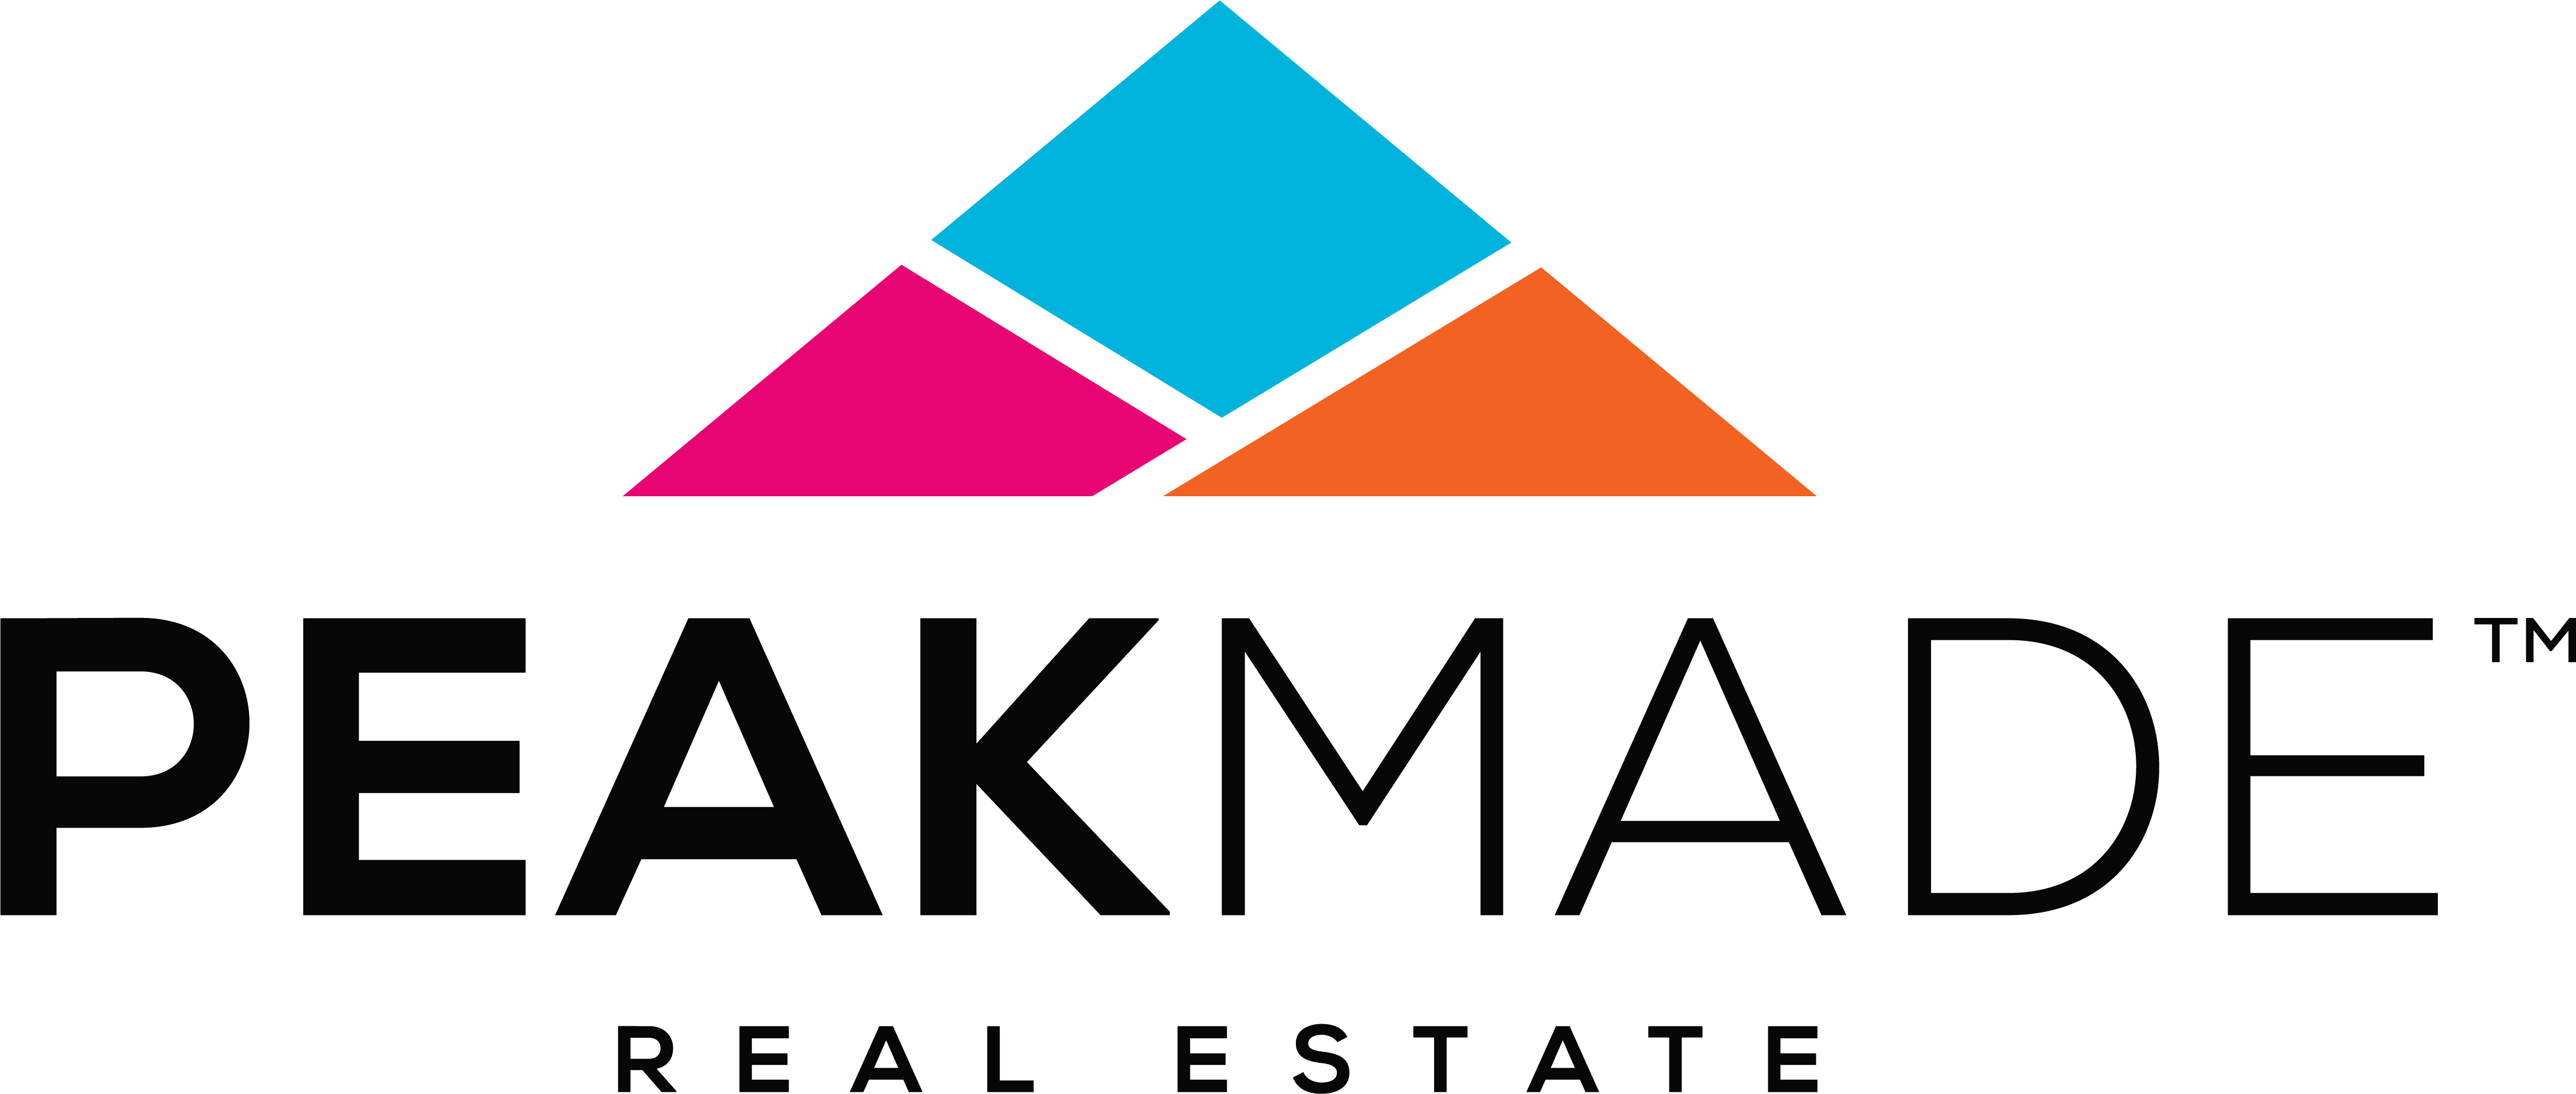 PeakMade Real Estate logo